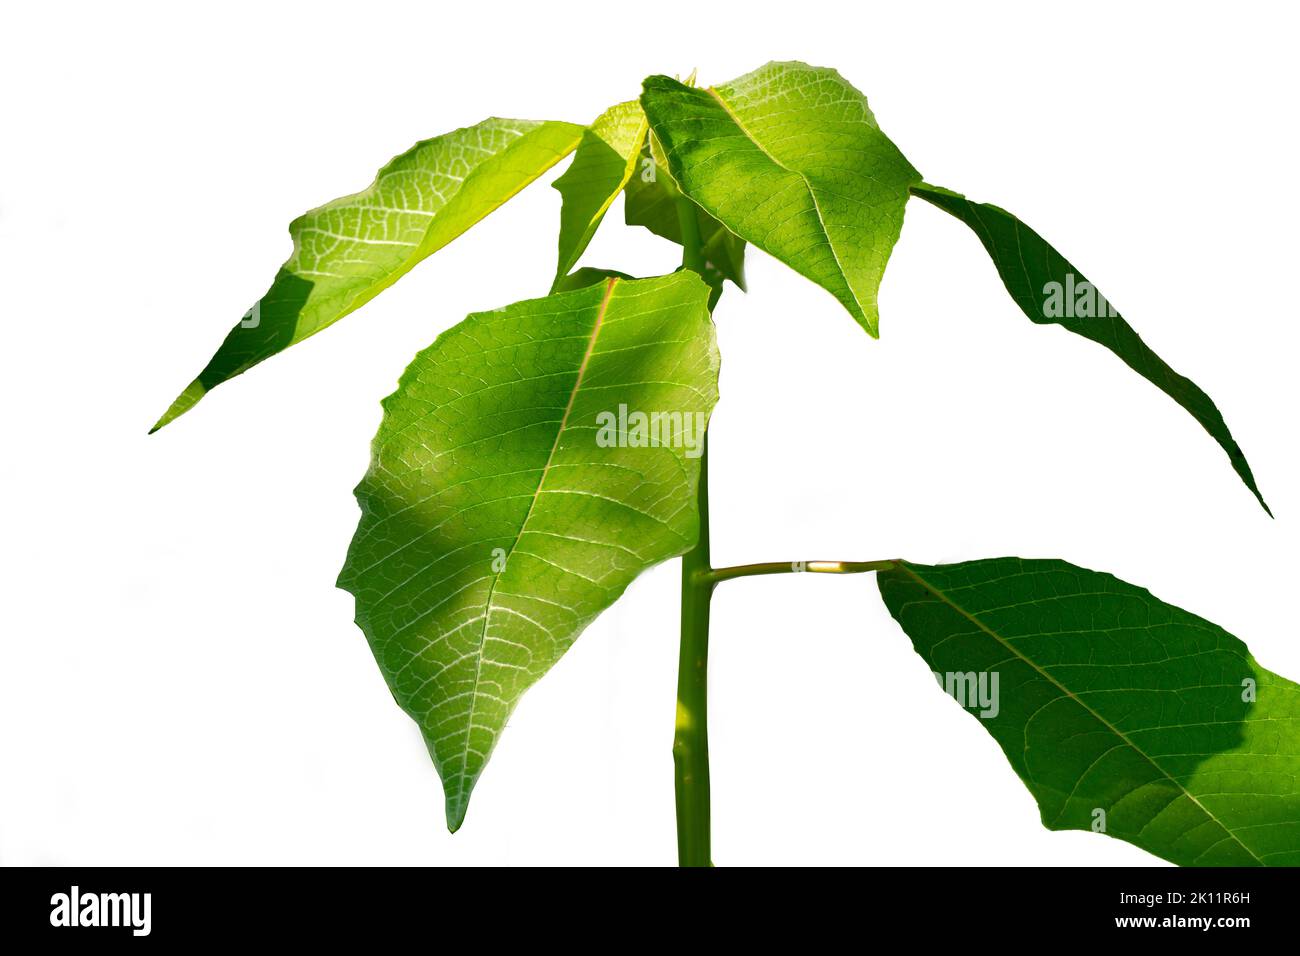 Primer plano Los brotes de la planta de poinsettia con hojas verdes frescas son claramente visibles en la superficie de la hoja y el marco de la hoja, en verano las hojas lo harán Foto de stock